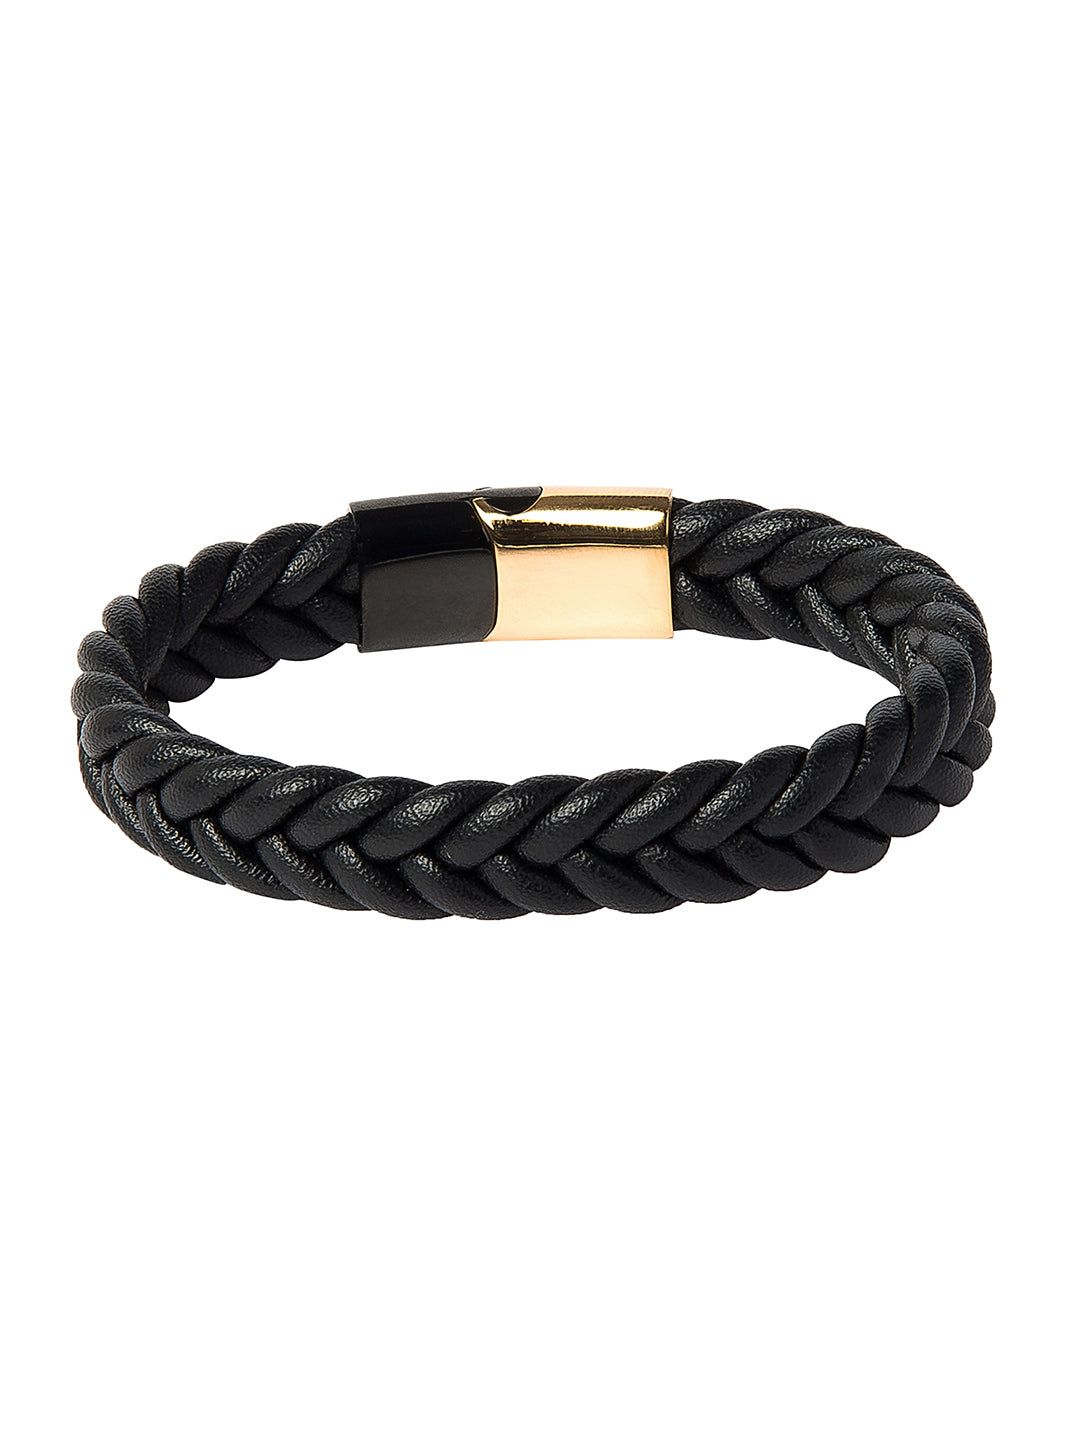 Black Stainless Steel Rubber Bracelet For Men | B120-SMJ-97 | Cilory.com